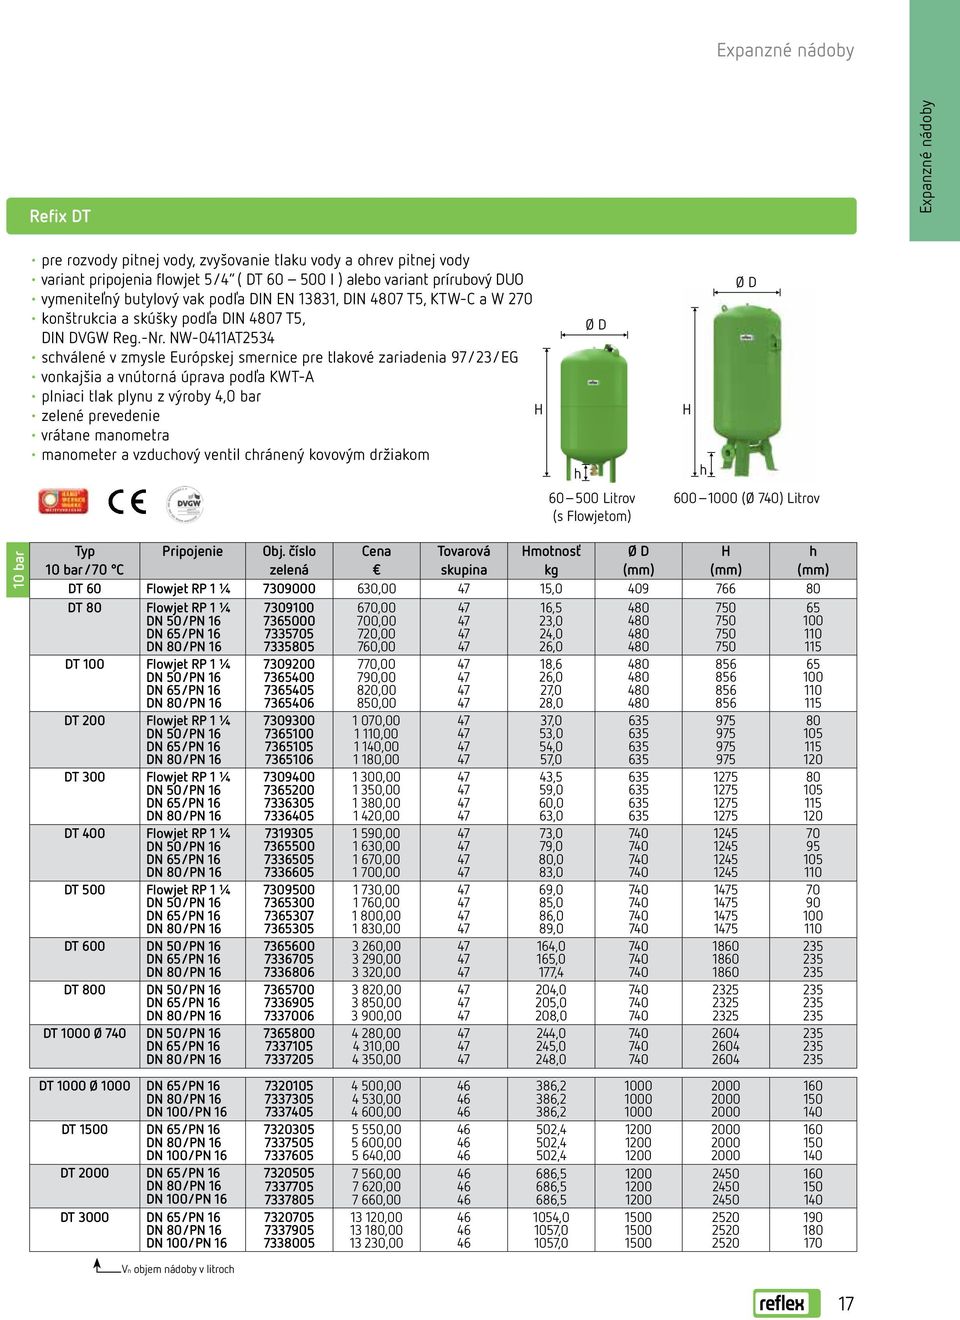 NW-0411AT2534 schválené v zmysle Európskej smernice pre tlakové zariadenia 97/23/EG vonkajšia a vnútorná úprava podľa KWT-A plniaci tlak plynu z výroby 4,0 bar zelené prevedenie vrátane manometra